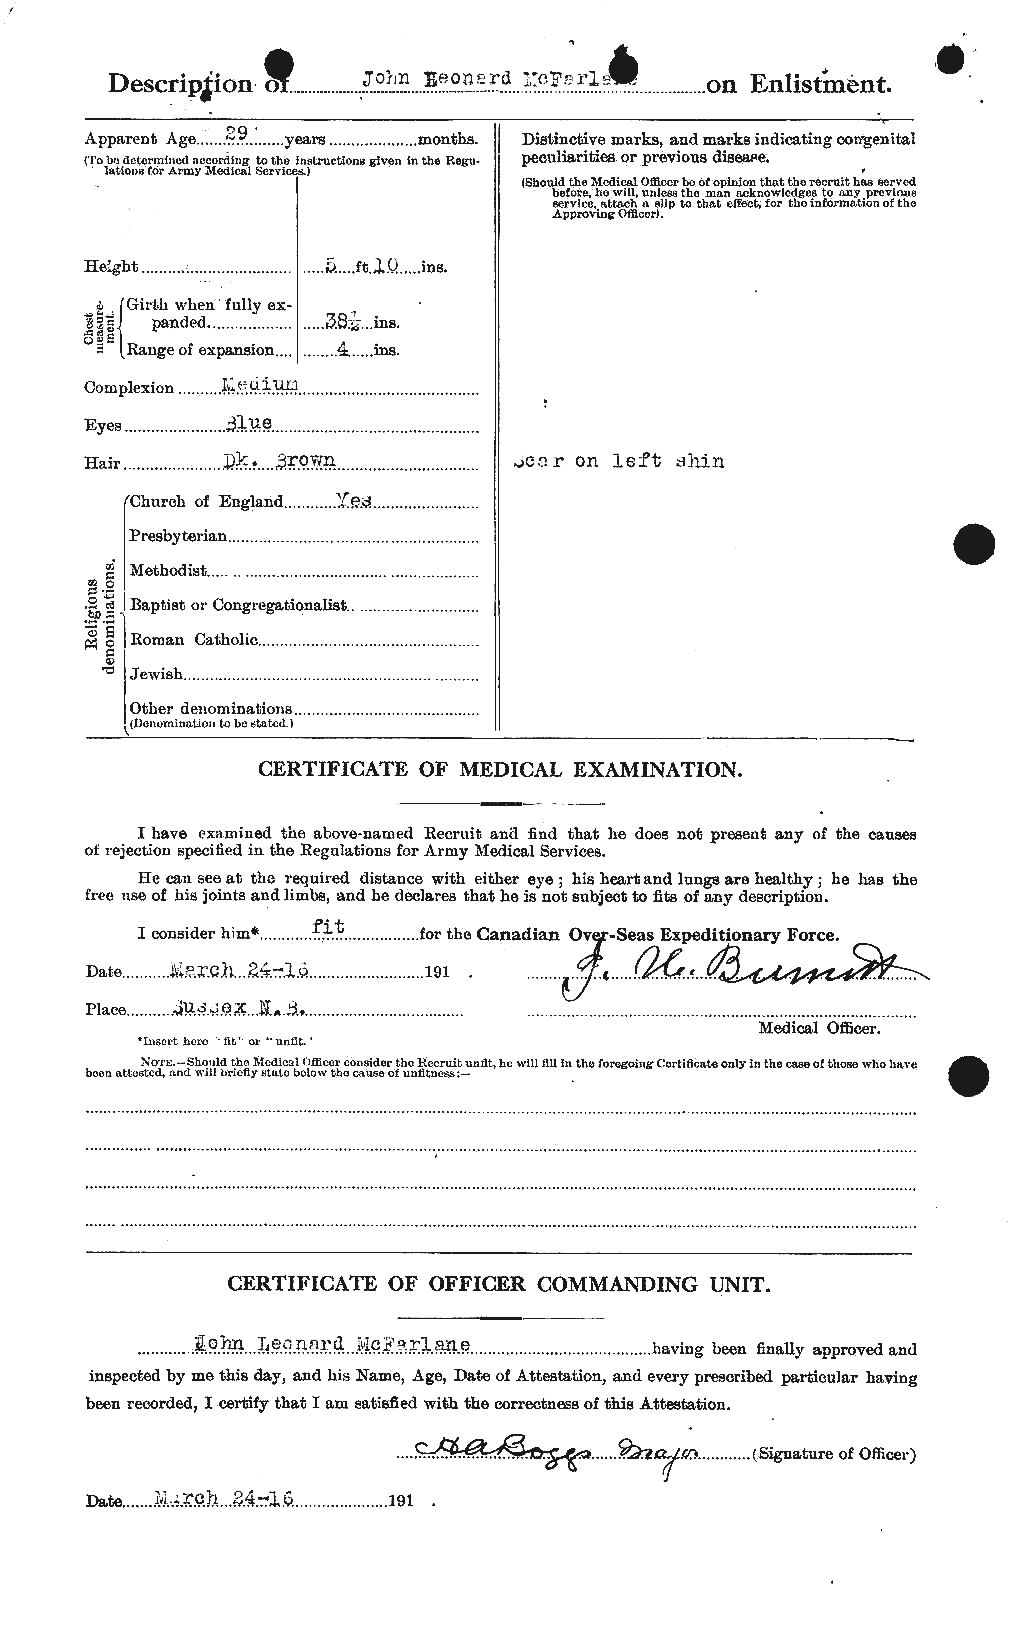 Dossiers du Personnel de la Première Guerre mondiale - CEC 521304b